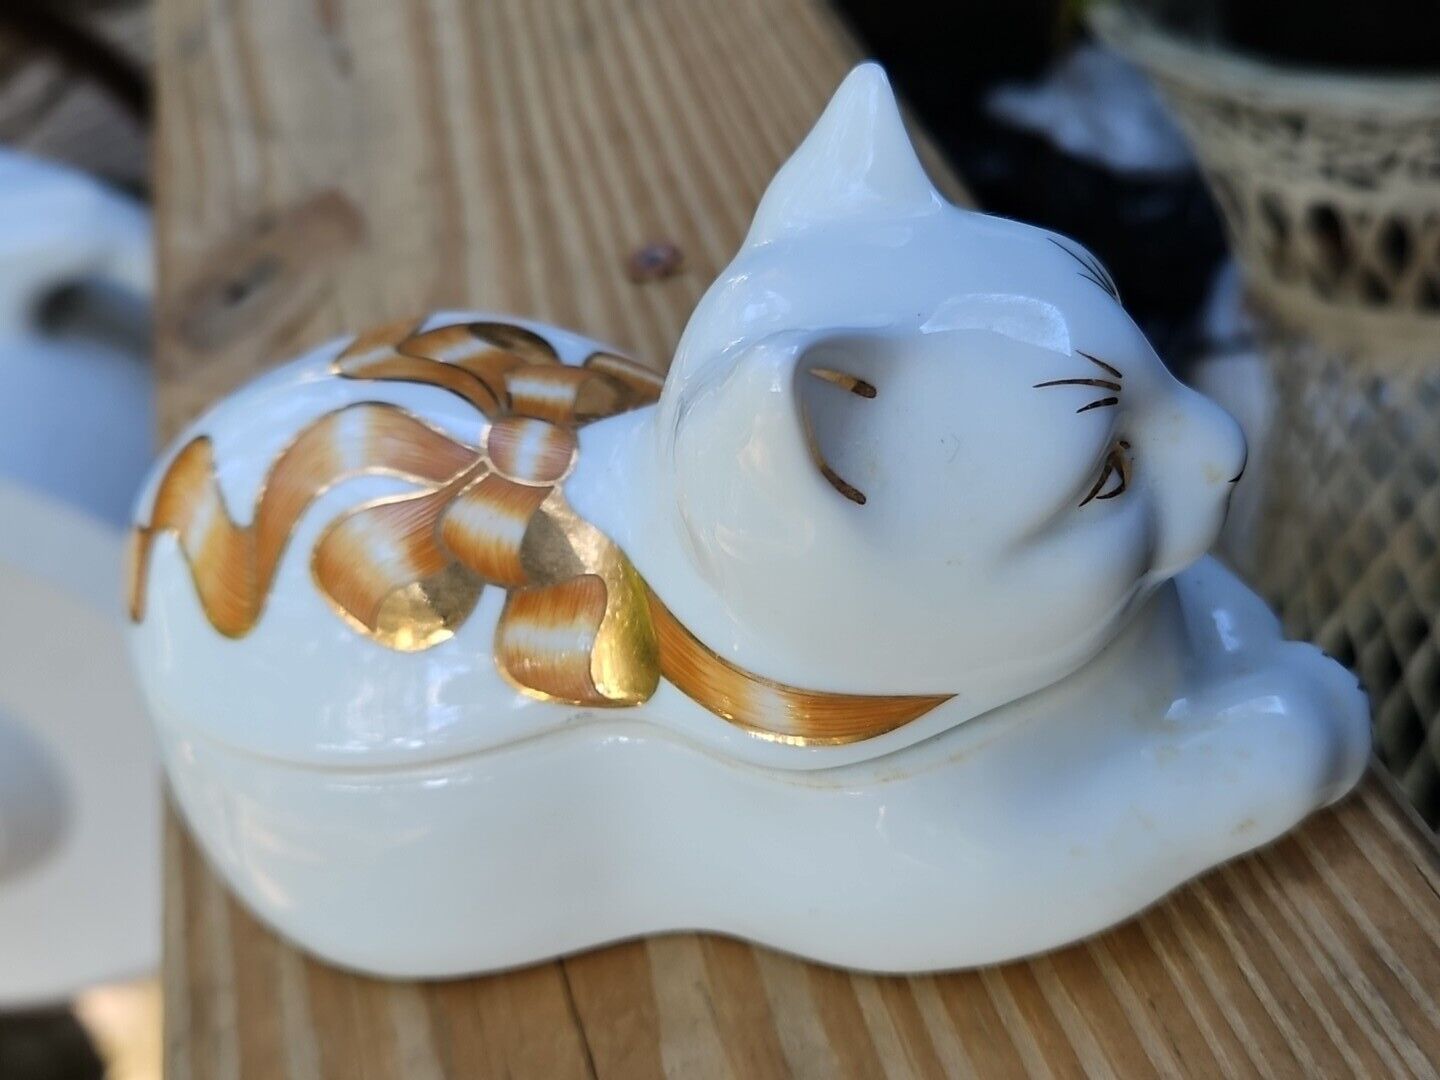 Elizabeth Arden Cat Trinket Box Candle Scented GOLD GILT Vintage Porcelain  Без бренда - фотография #4